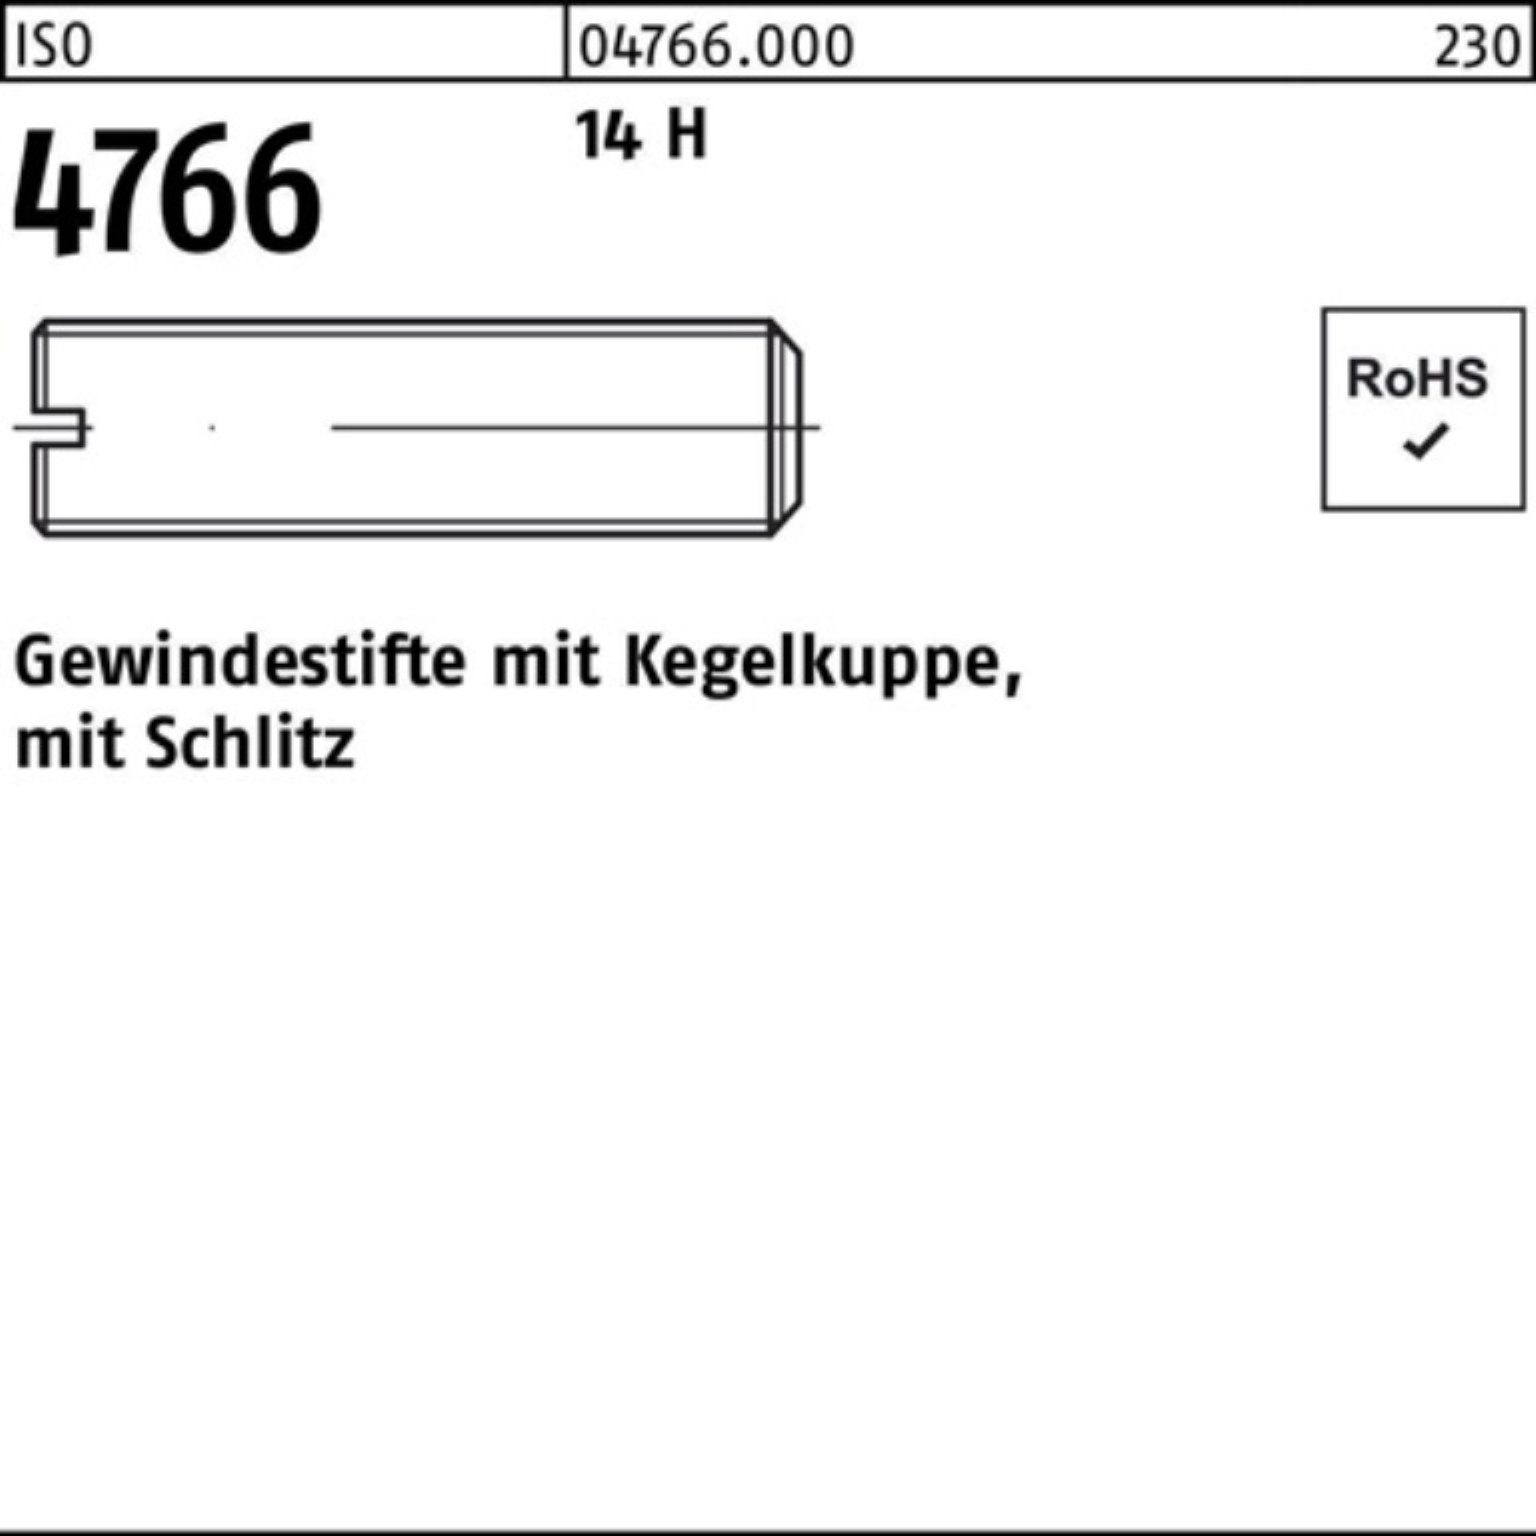 M4x 200er Gewindebolzen 4766 200 Gewindestift Reyher 3 Kegelkuppe/Schlitz H 14 Pack St ISO